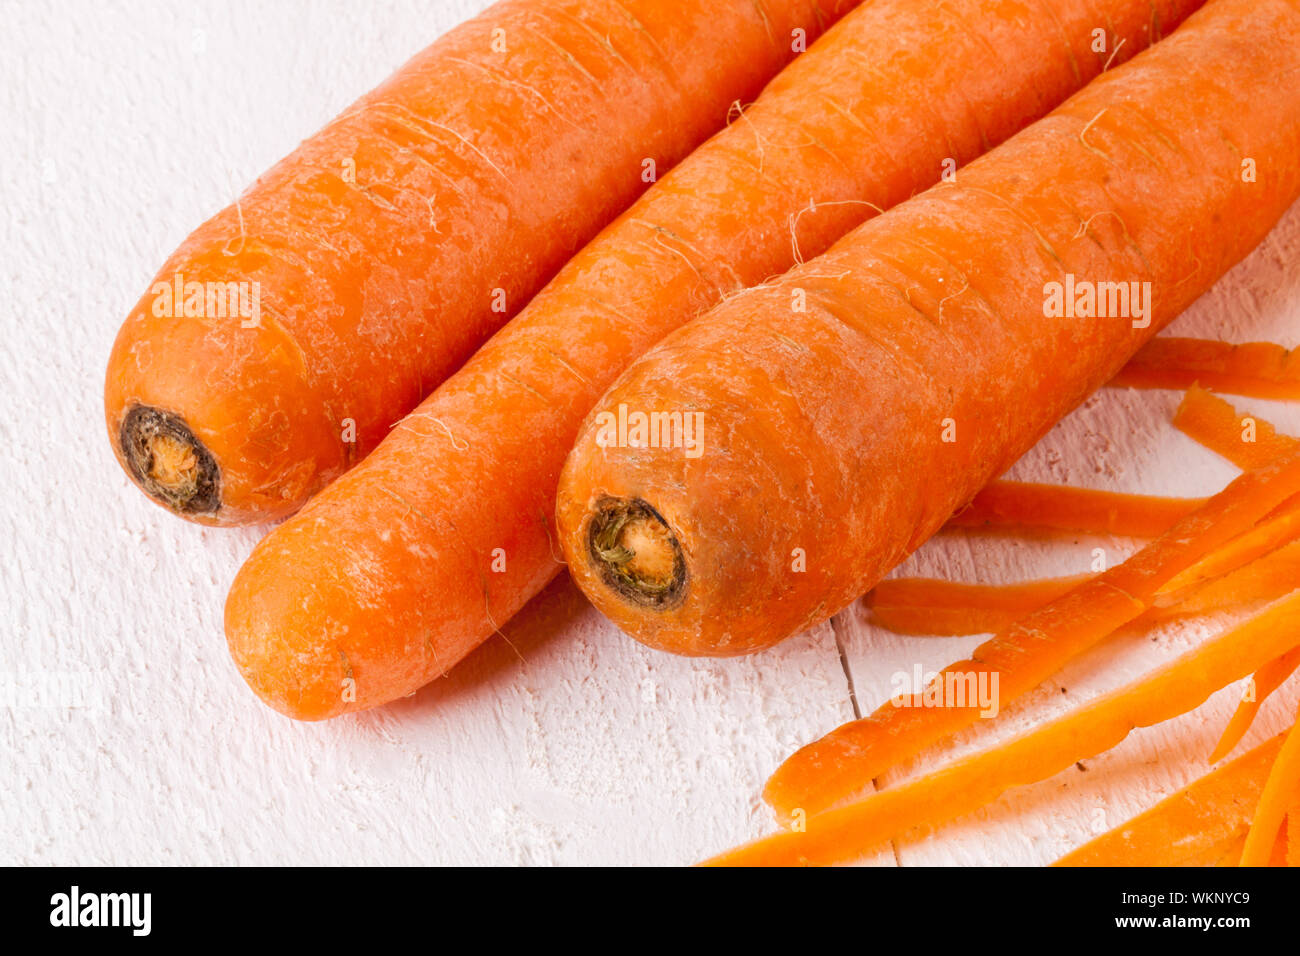 Fresh peeled carrots Stock Photo